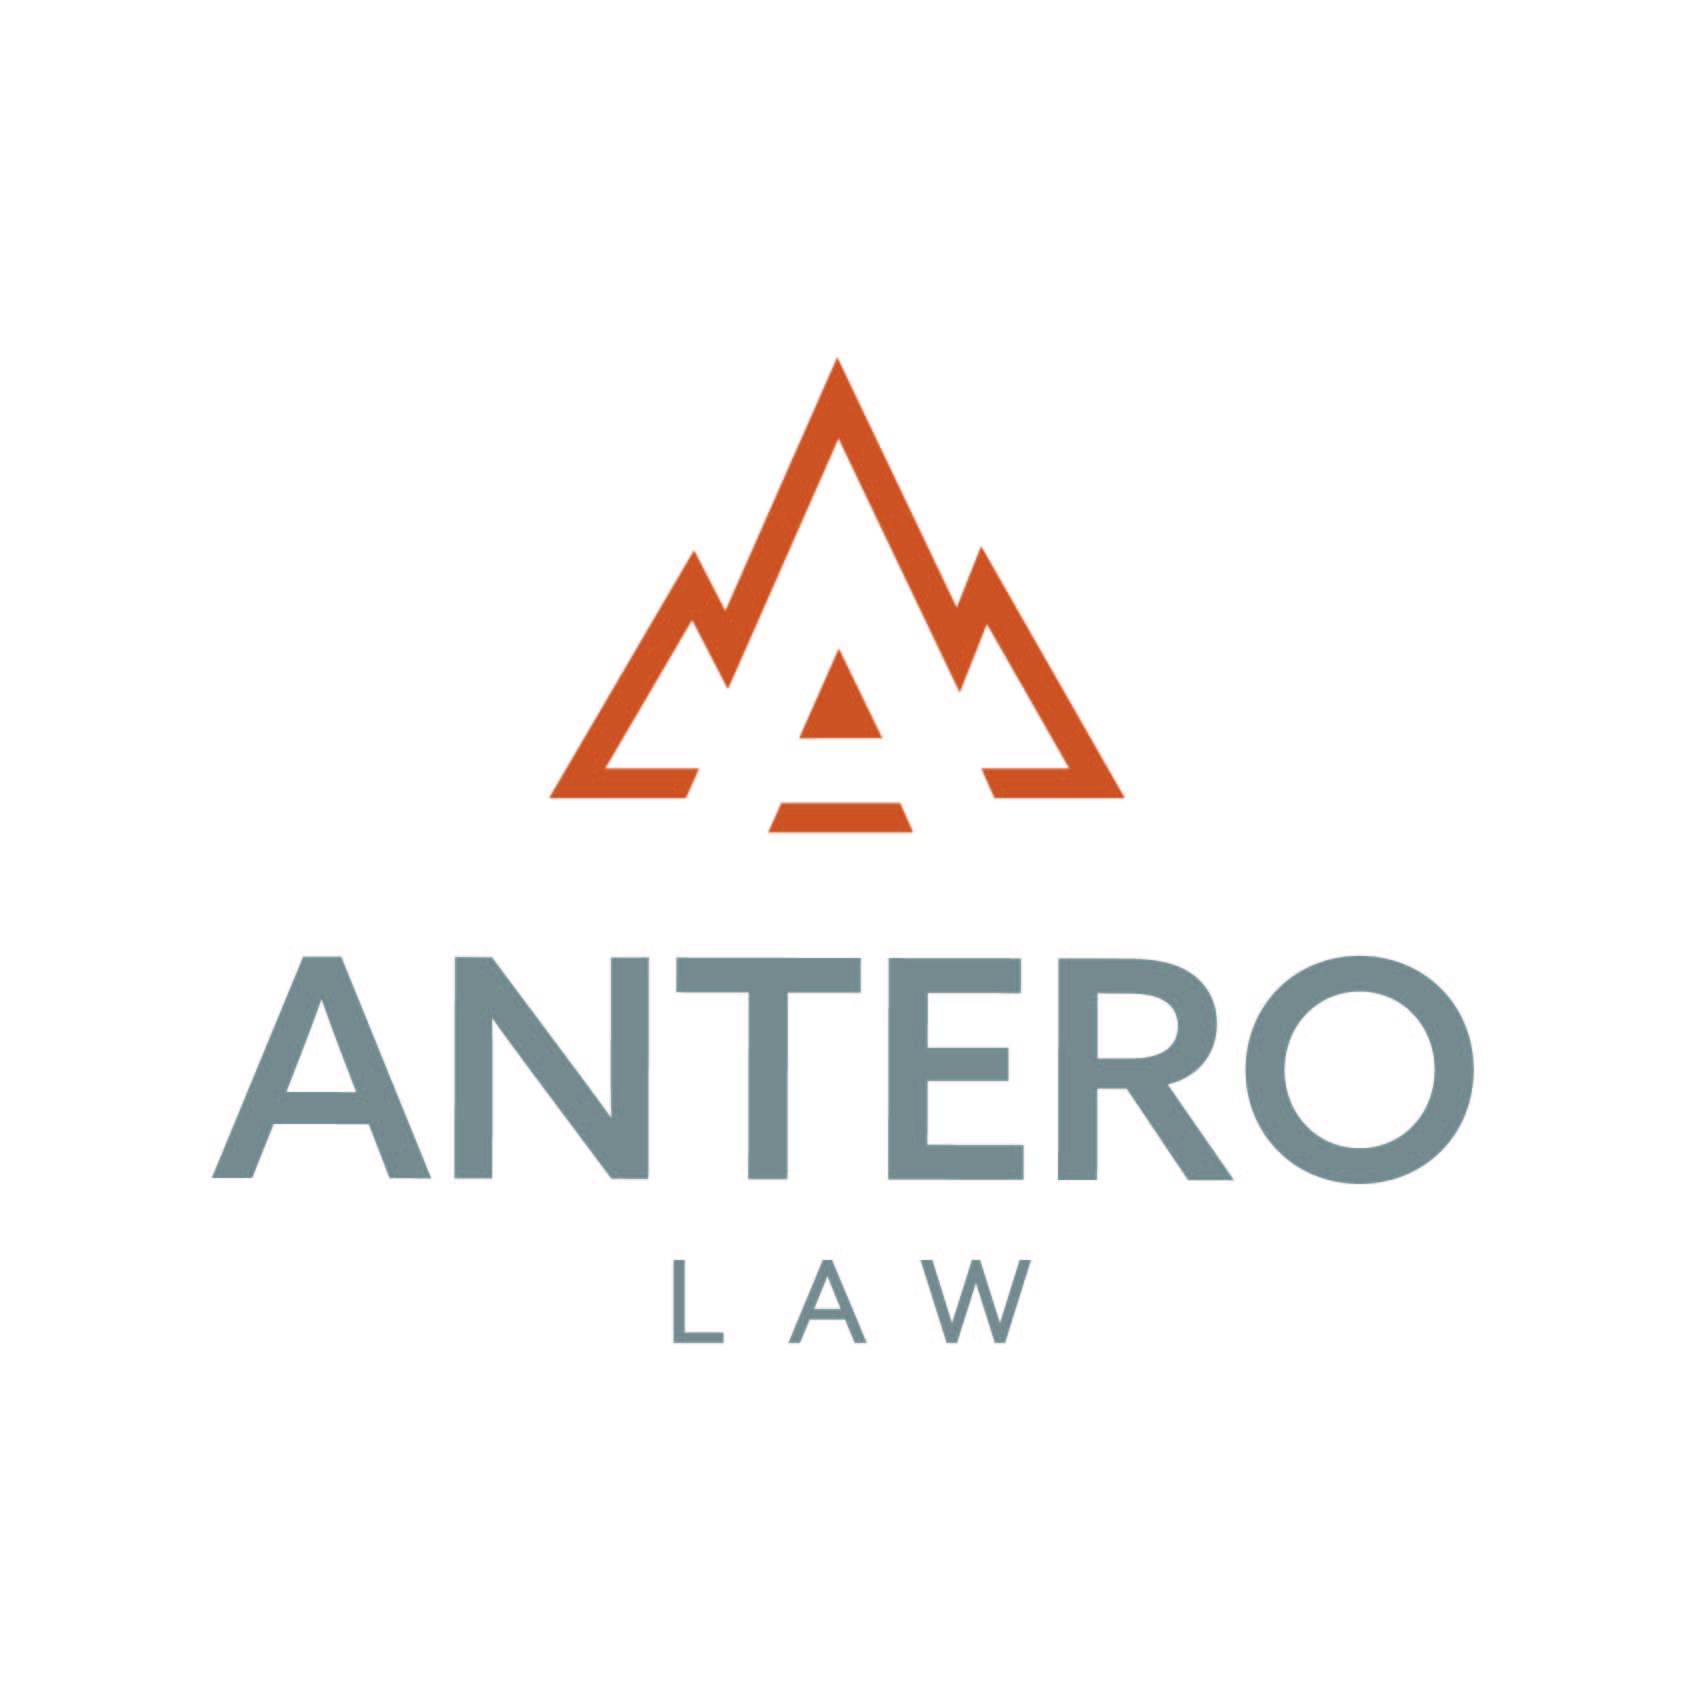 Antero Law, LLC